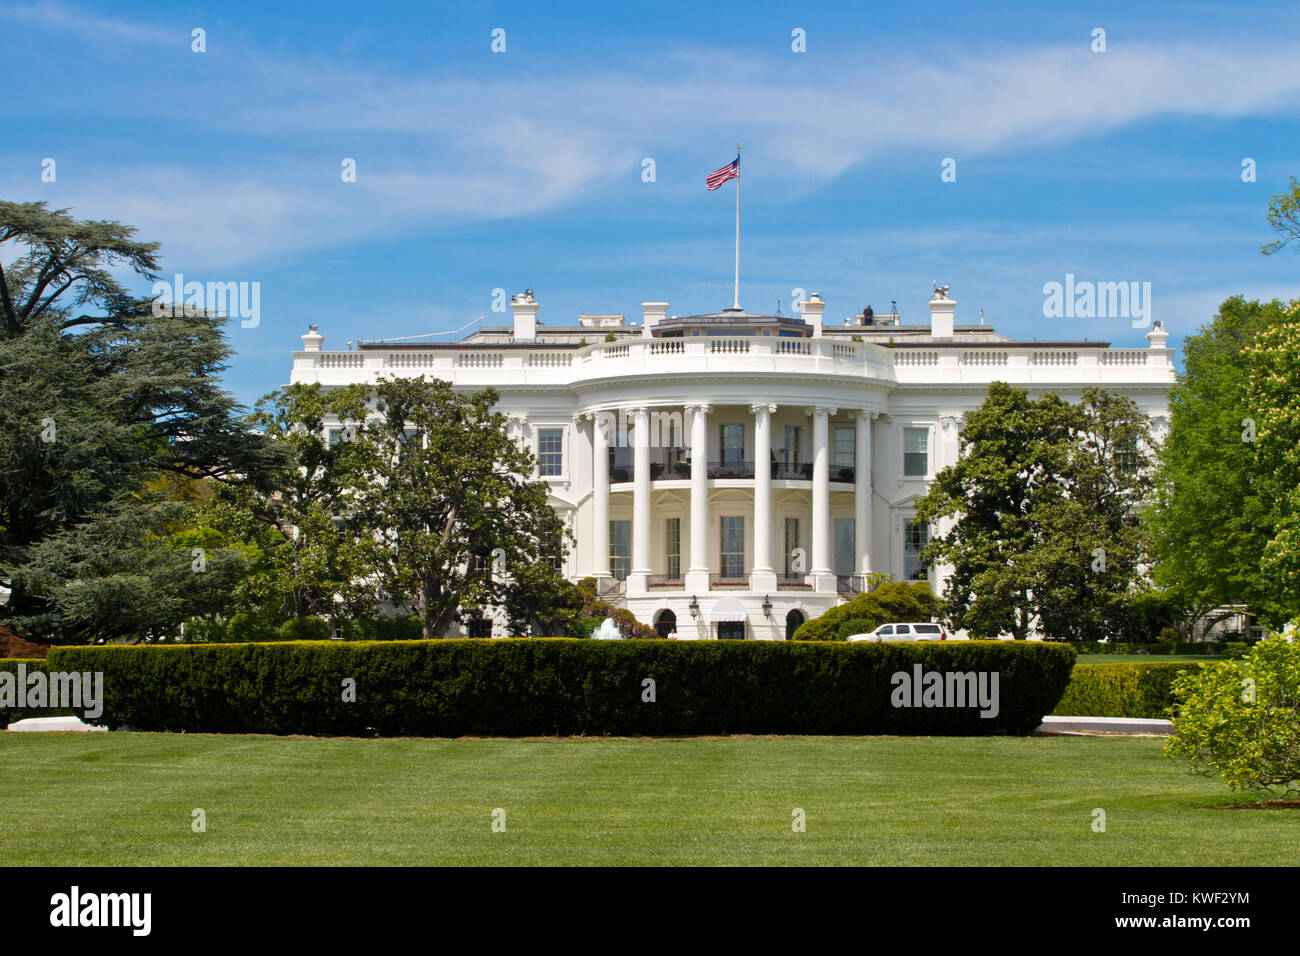 La Casa Blanca es la residencia oficial y el lugar de trabajo del Presidente de los Estados Unidos. Está localizado en el 1600 de la avenida Pennsylvania en Washington Foto de stock